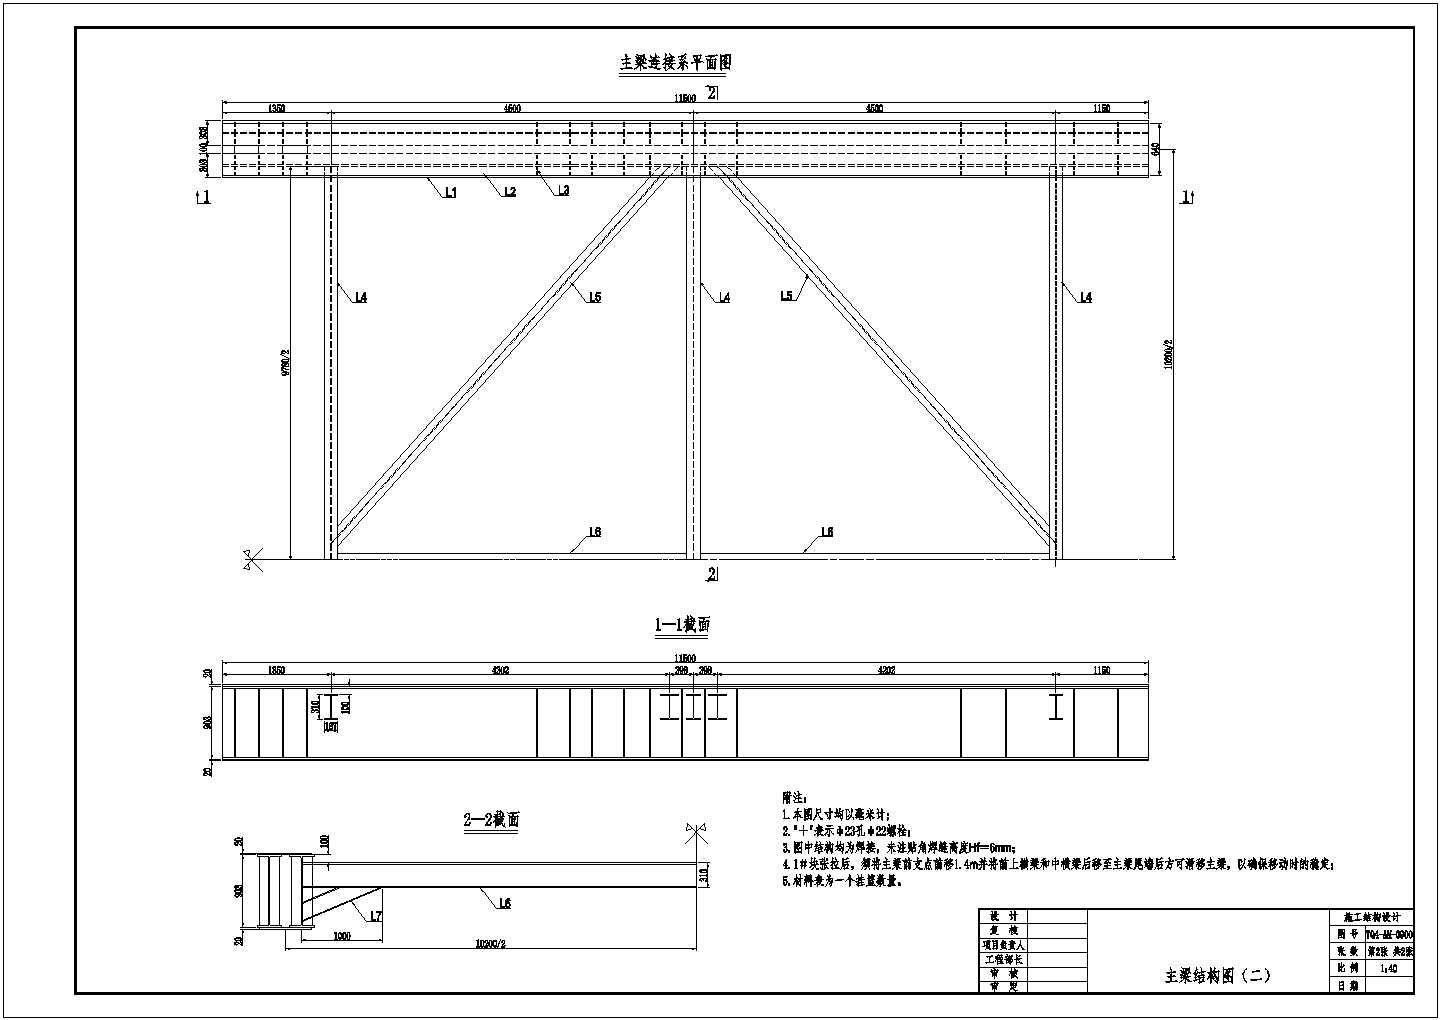 澳凼某桥挂篮设计、计算及施工图